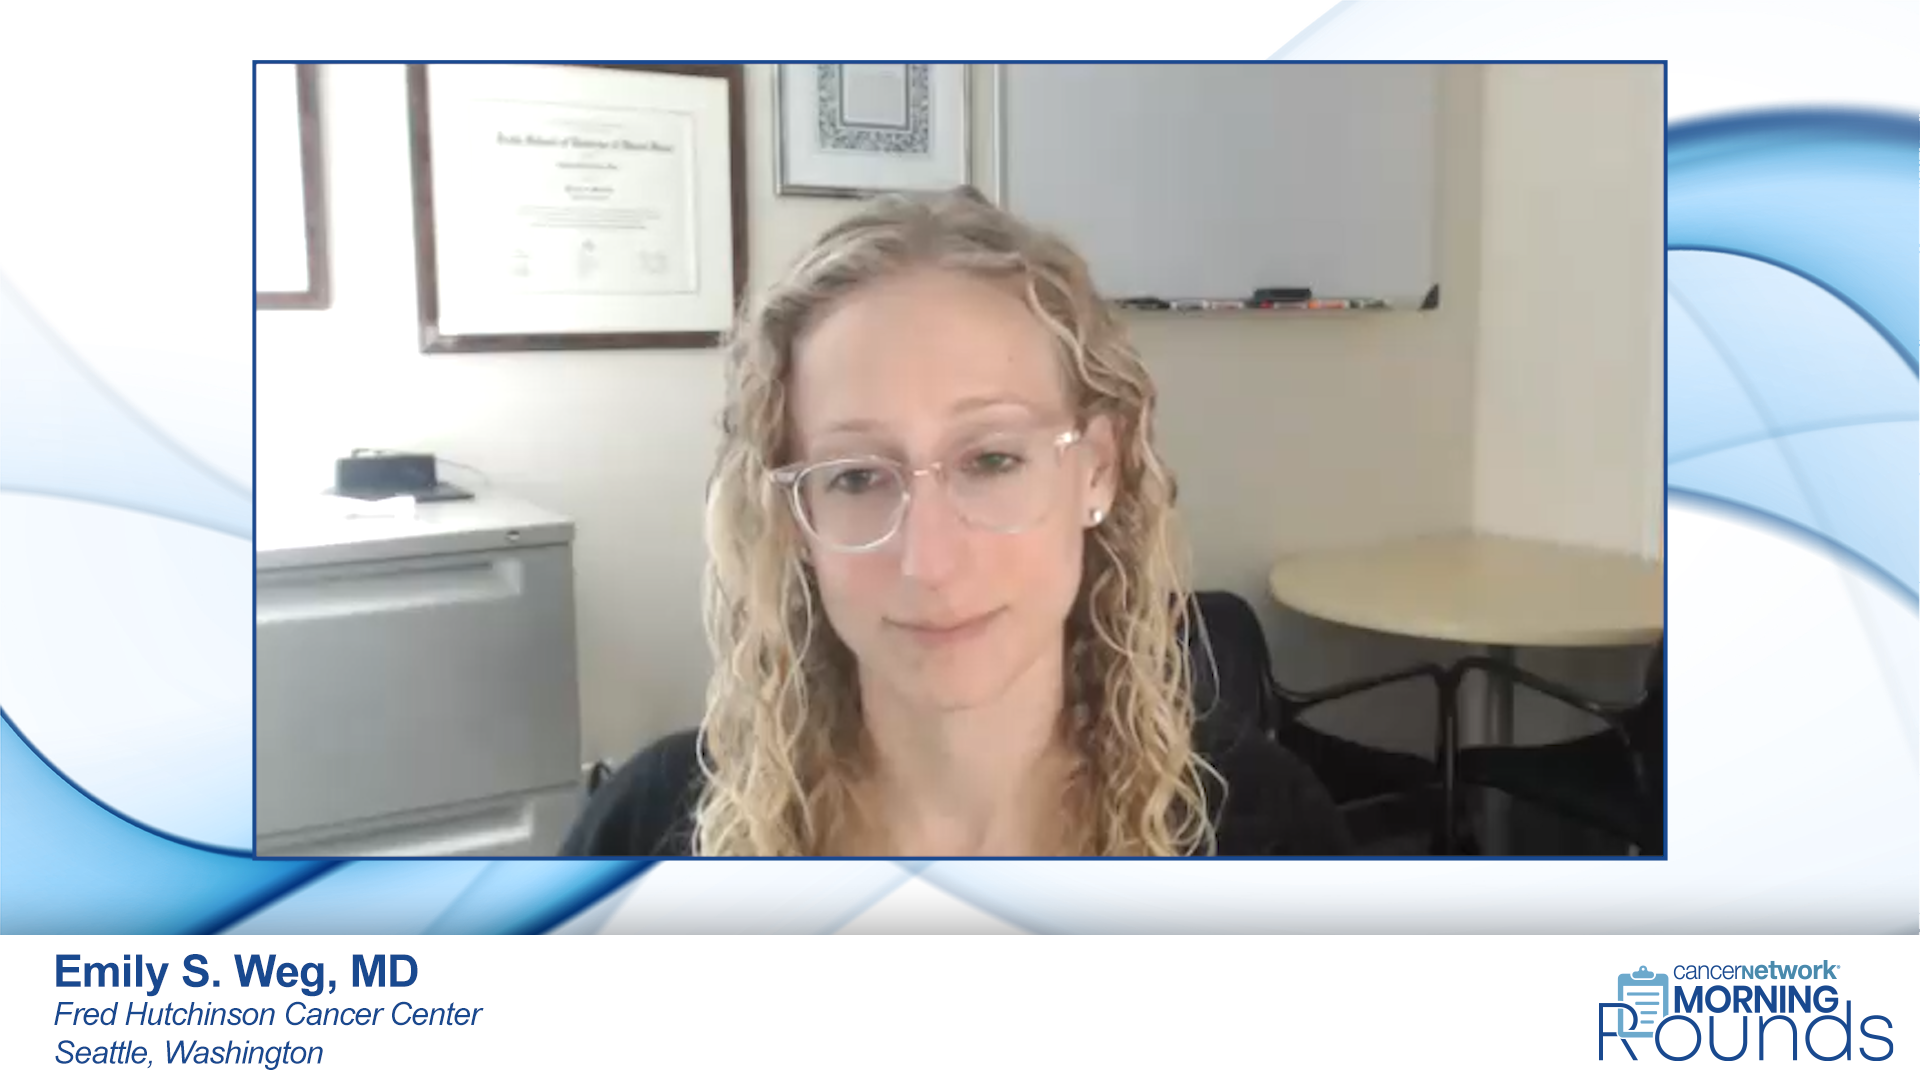 Emily S. Weg, MD, an expert on bladder cancer